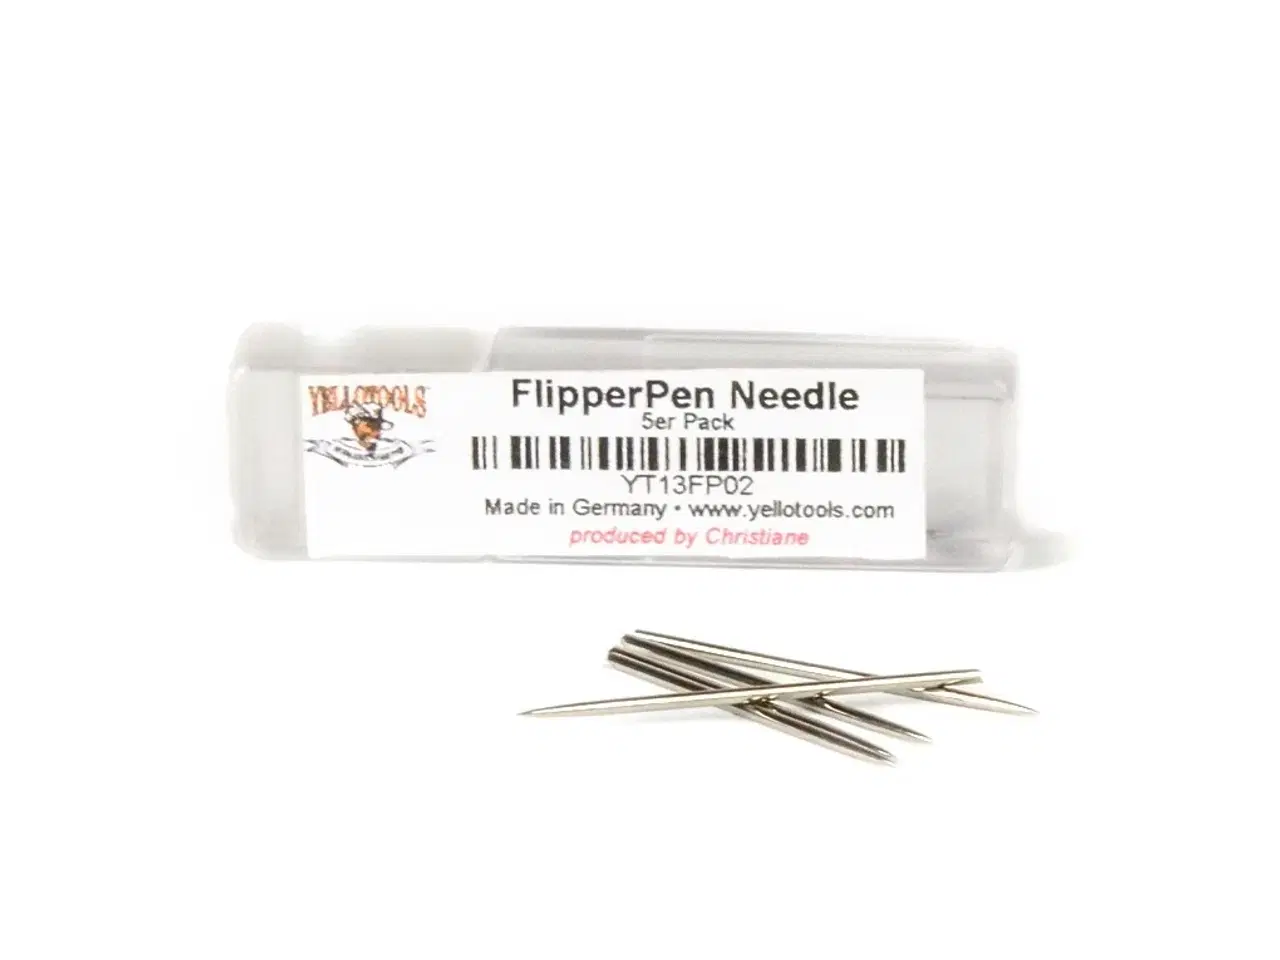 Billede 1 - 5 stk. nåle til spidspen (FlipperPen)